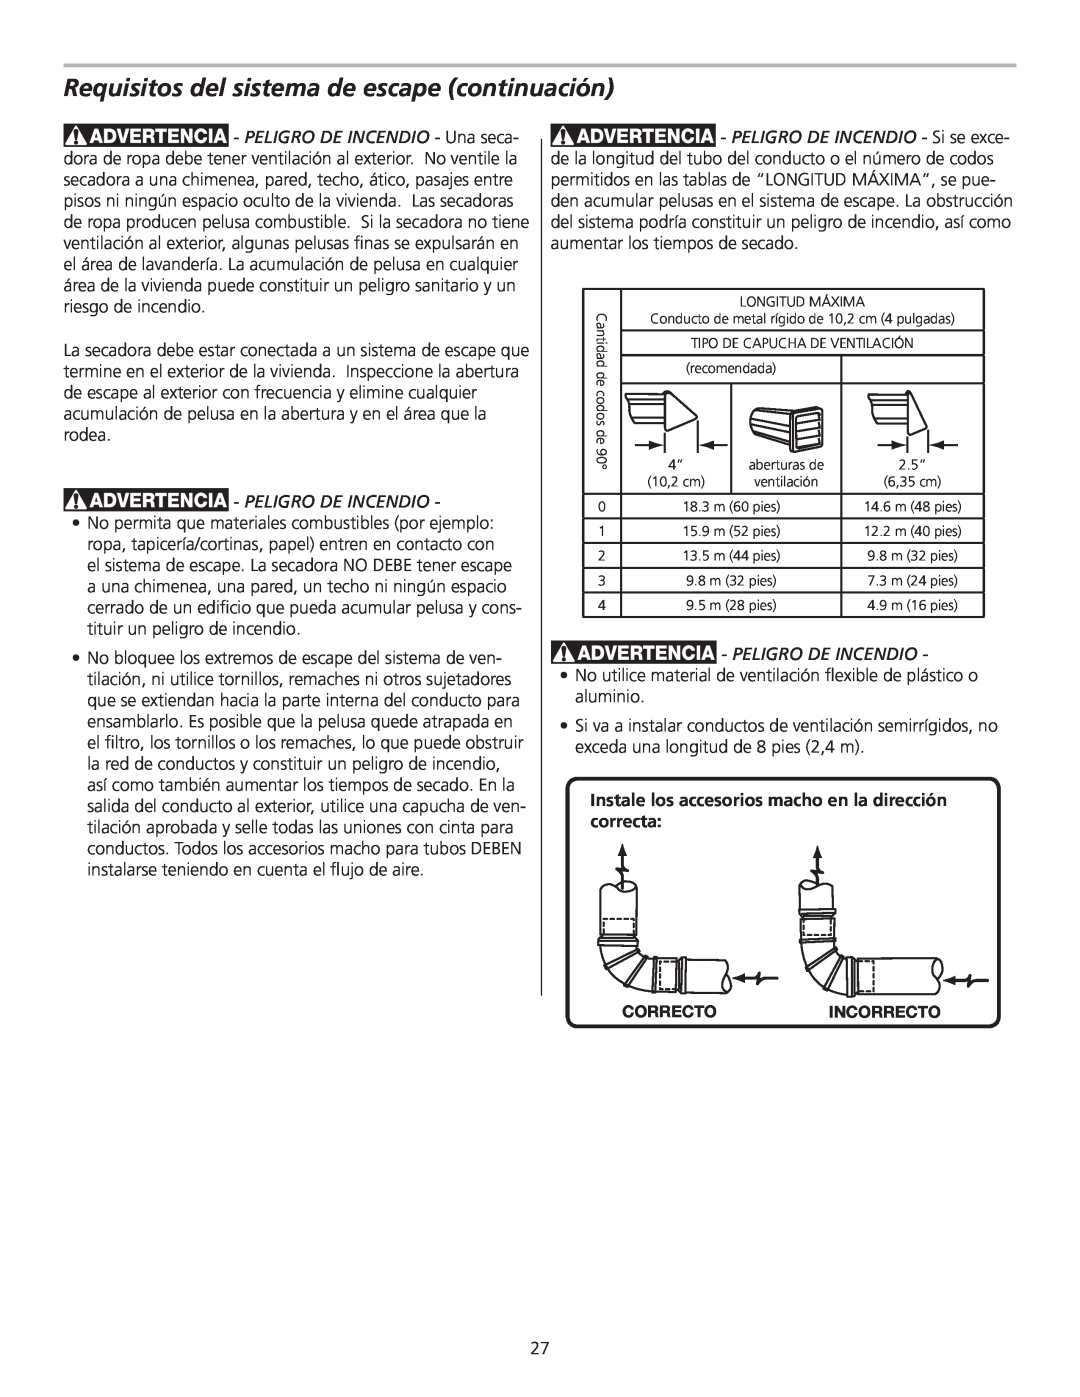 Frigidaire 137153700B installation instructions Requisitos del sistema de escape continuación, Peligro De Incendio 